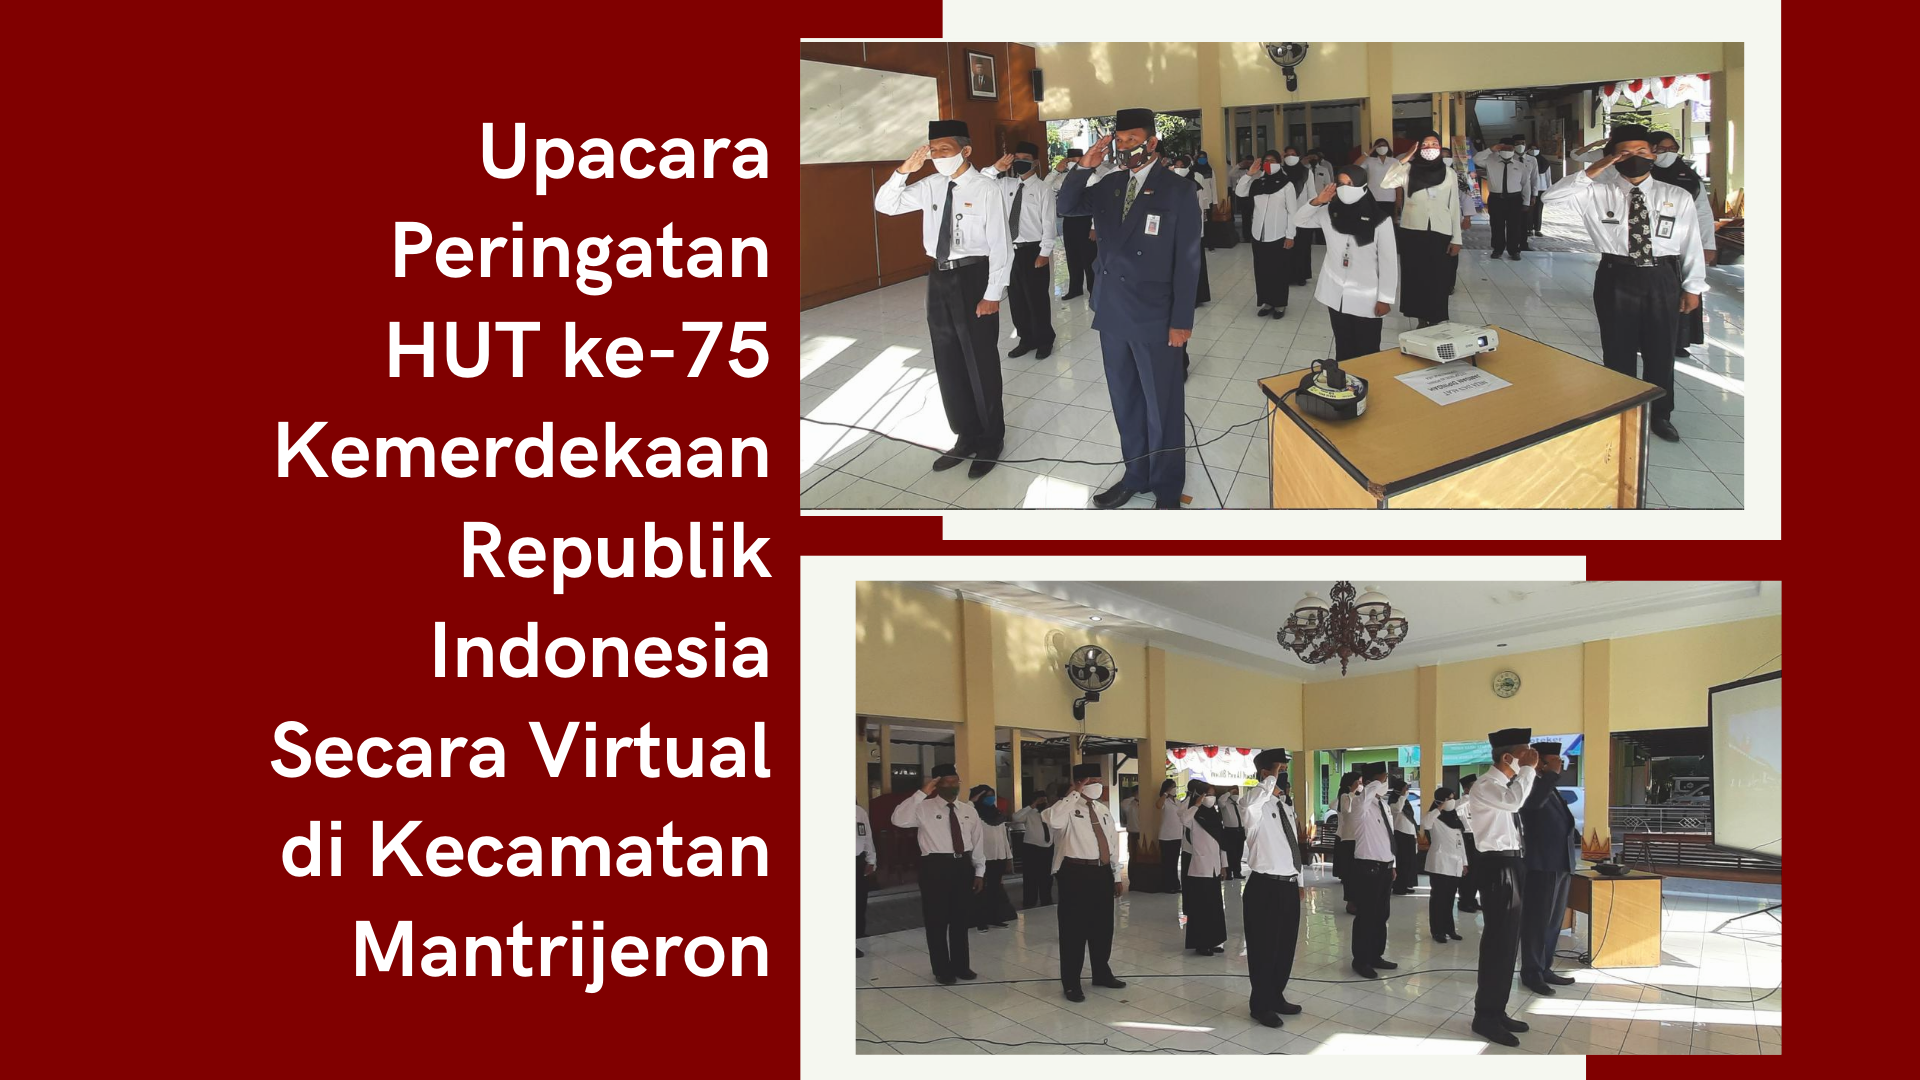 Upacara Peringatan HUT ke-75 Kemerdekaan Republik Indonesia  Secara Virtual di Kecamatan Mantrijeron